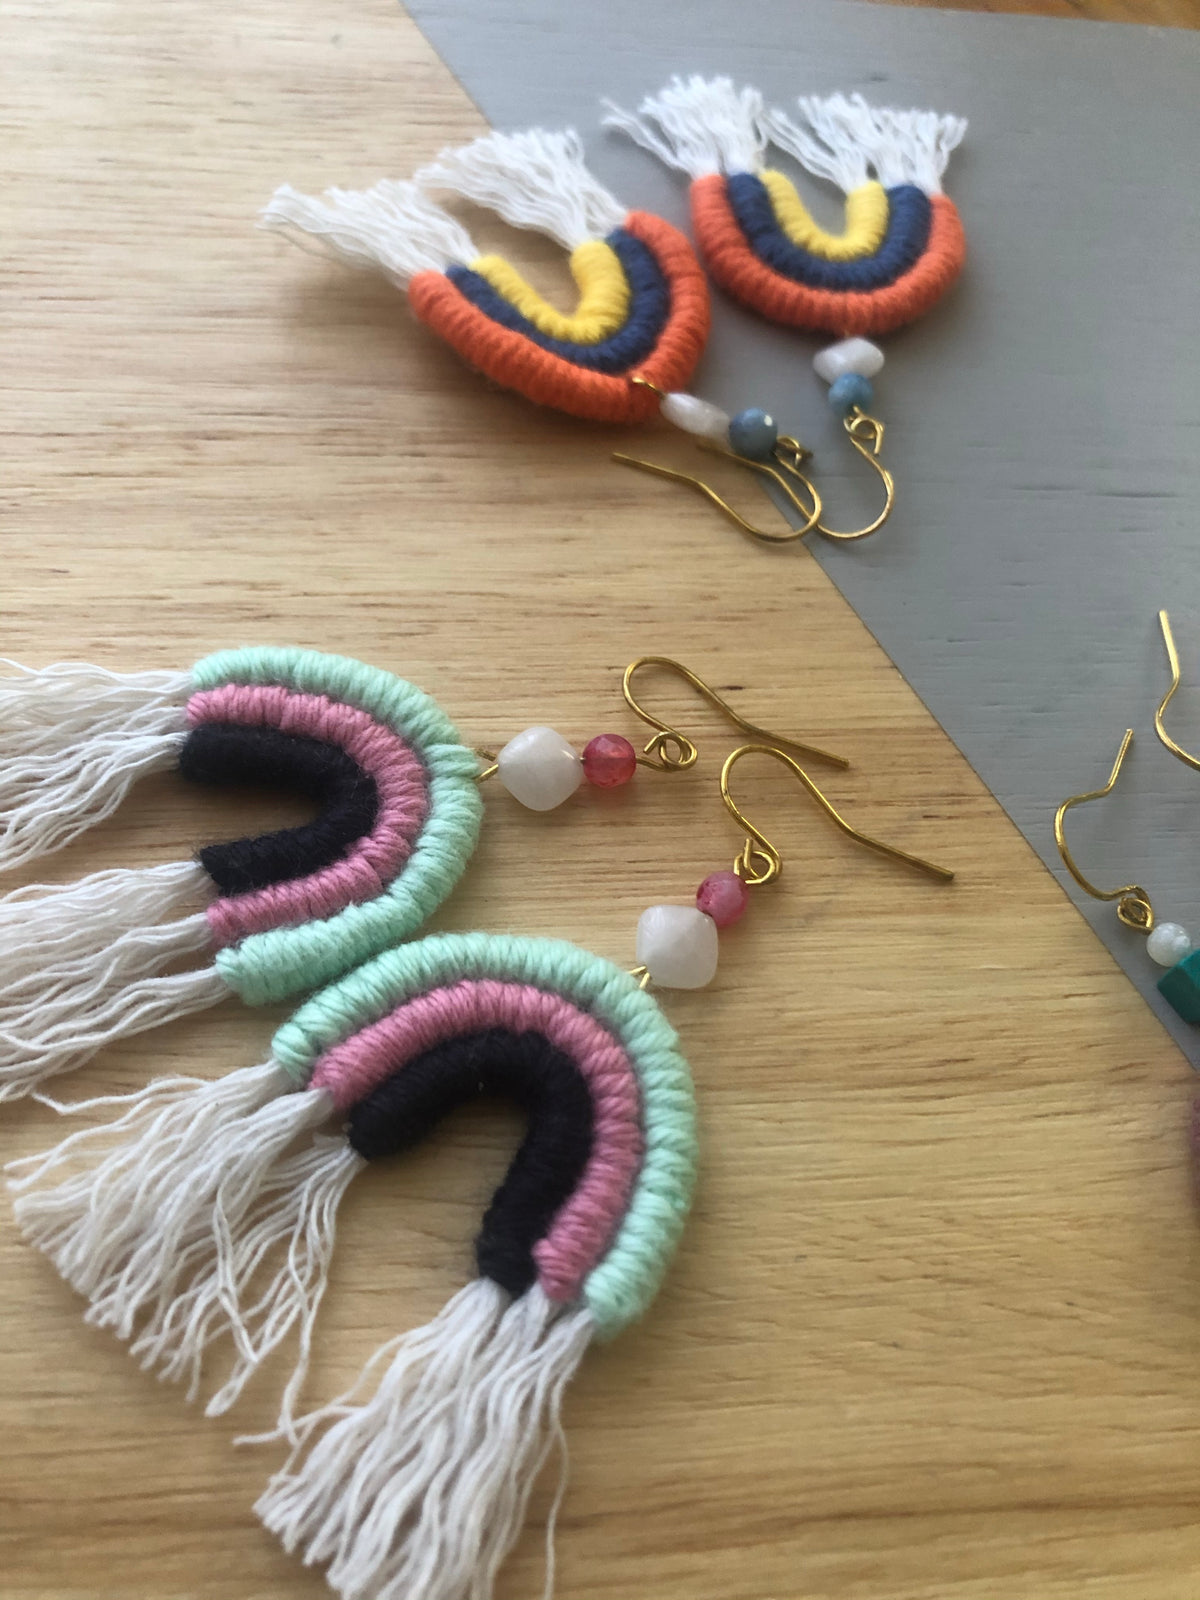 Juno Rainbow Crochet Earrings (ready stock)